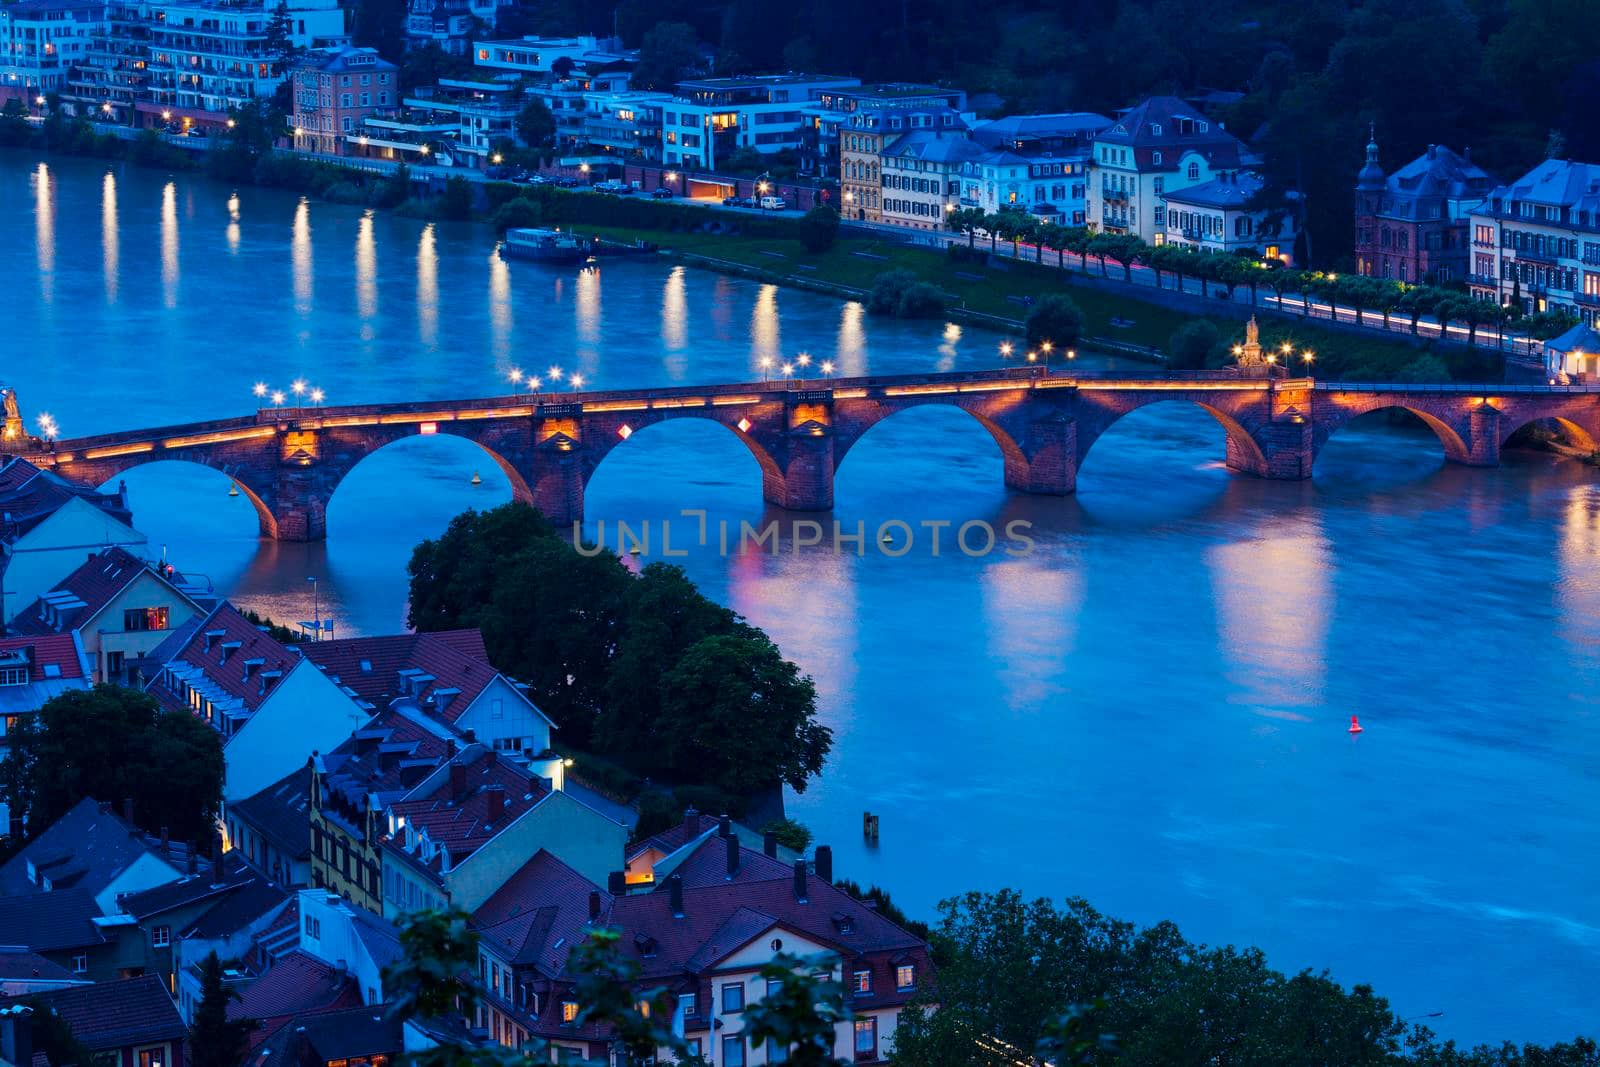 Karl Theodor Bridge in Heidelberg by benkrut